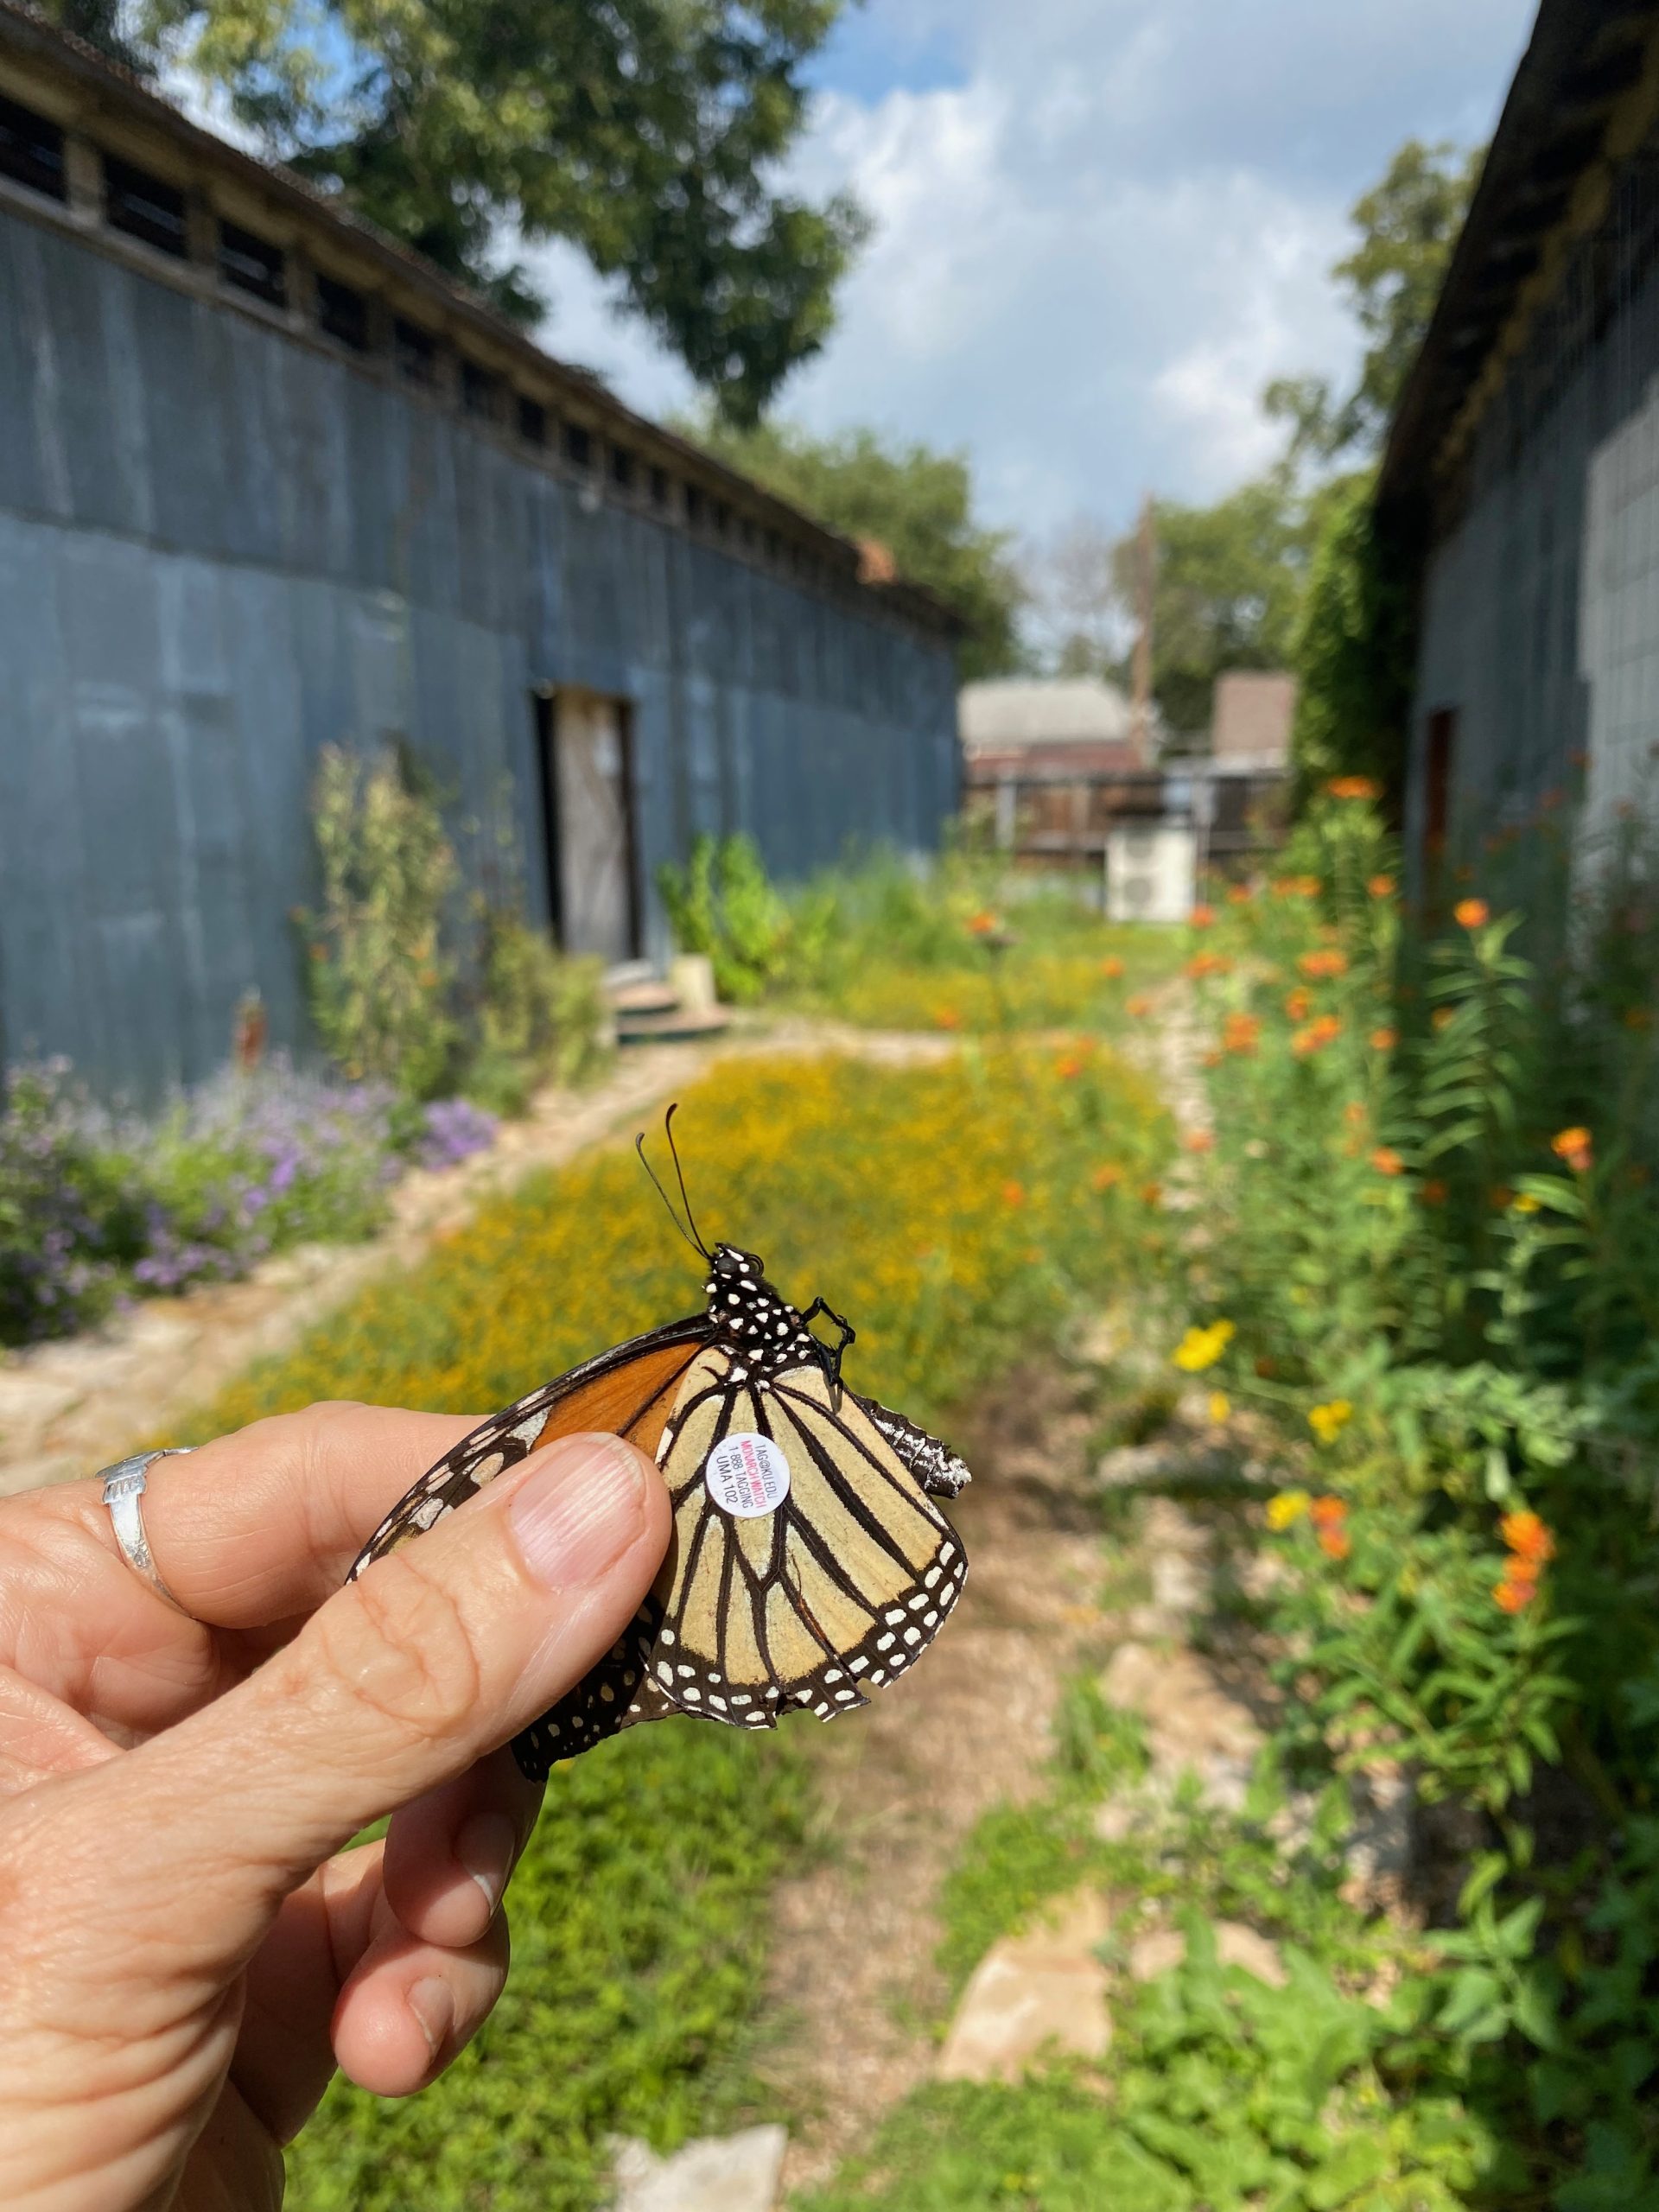 tagged monarch at Wherehousebarn